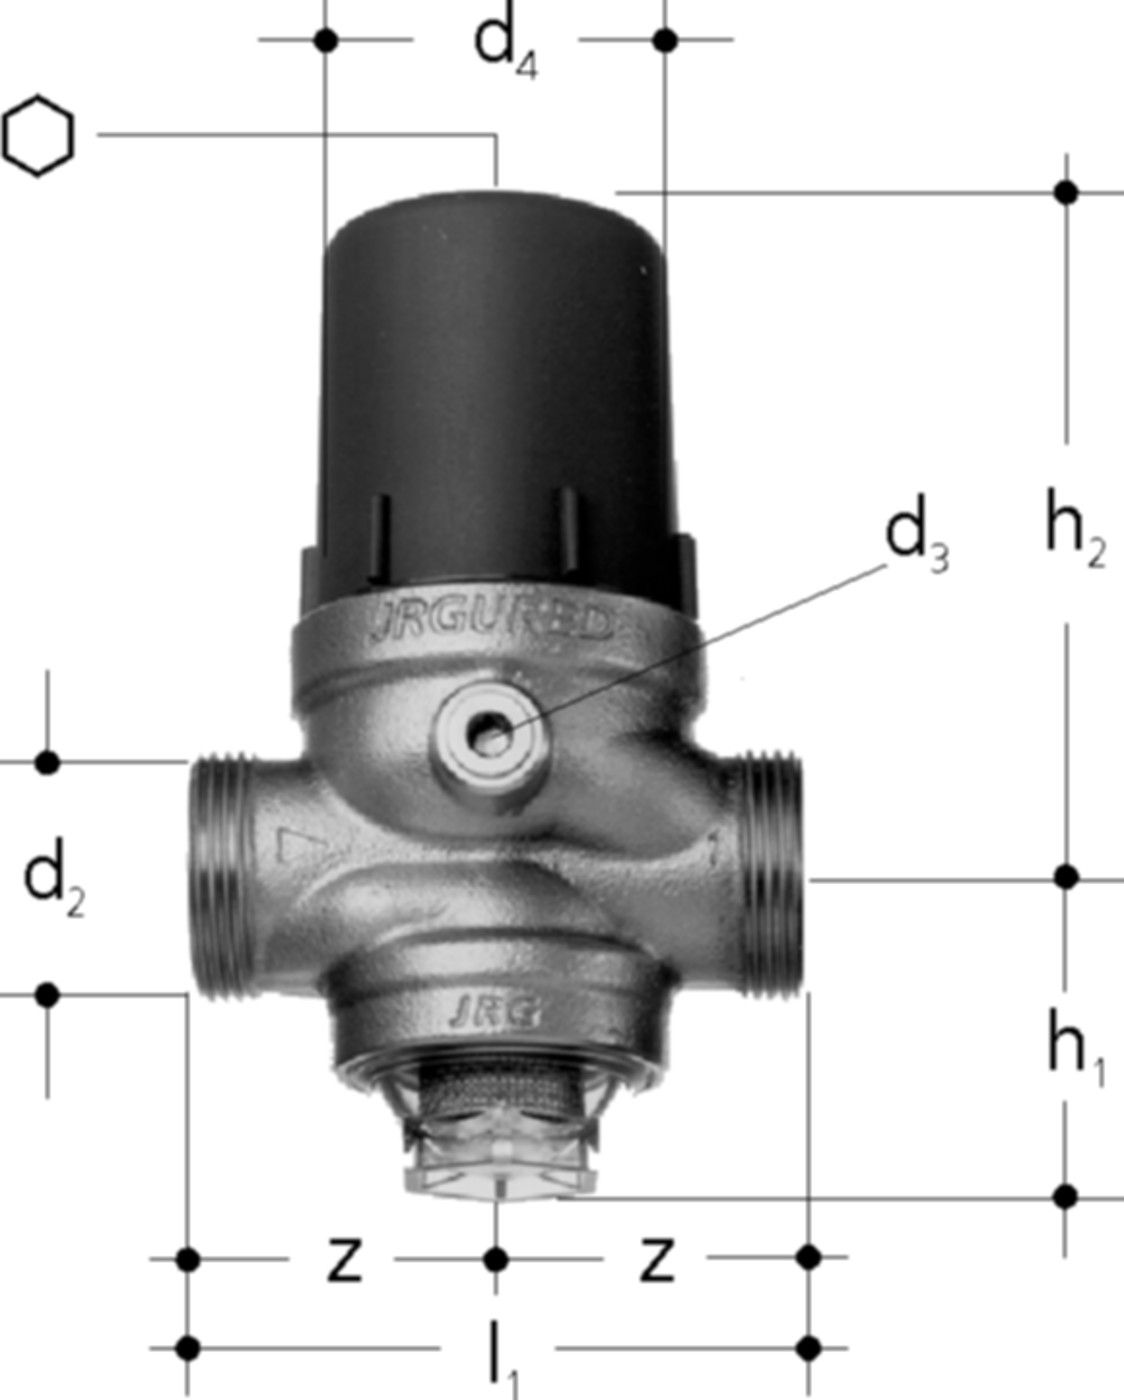 Druckred-Ventil DN25 1303.025 1" / G 11/4" , ohne Verschraubung - JRG Armaturen